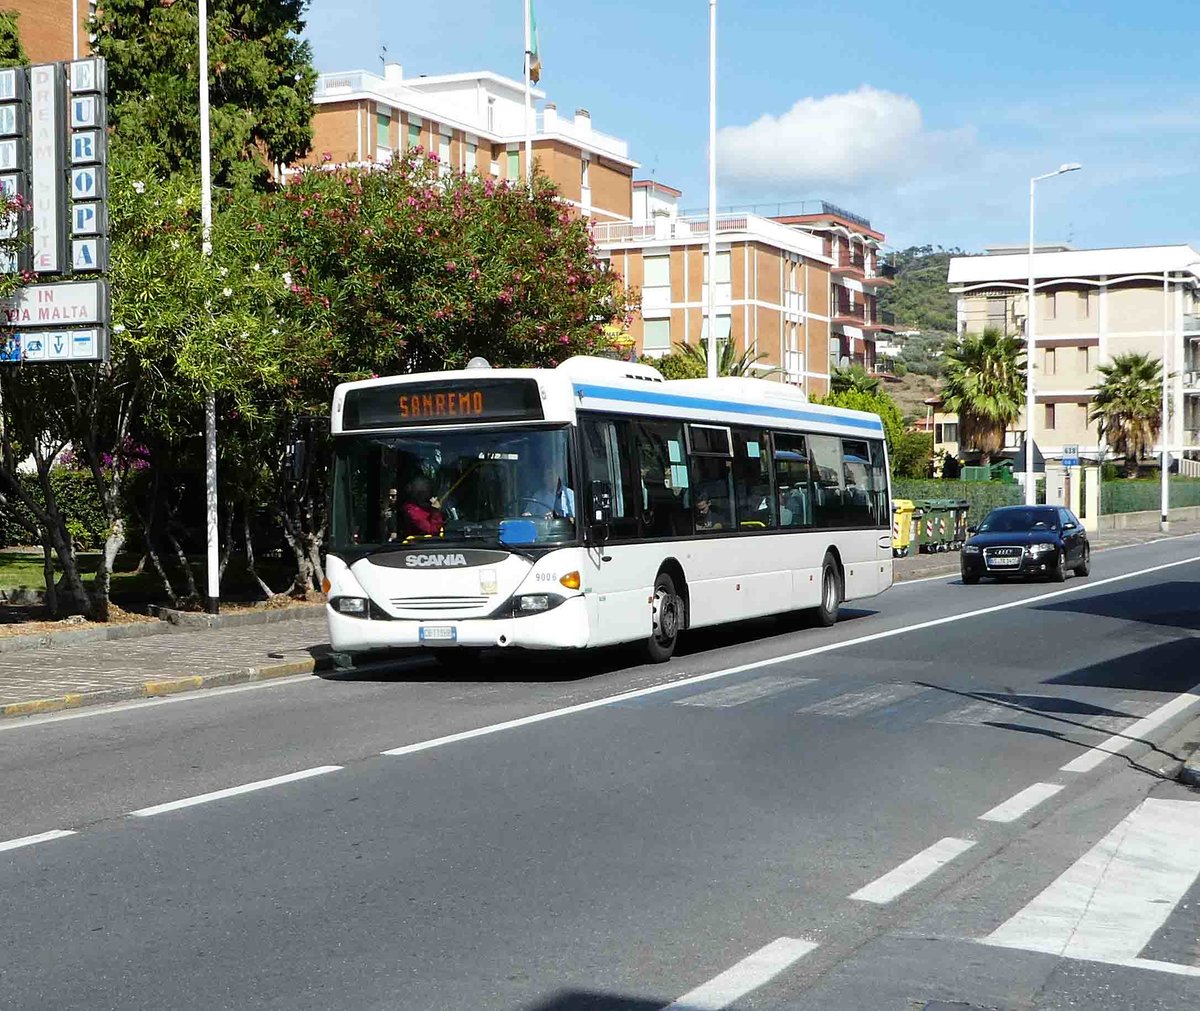 Scania als Linienbus auf dem Weg nach San Remo fotografiert in Bartolomo im September 2017